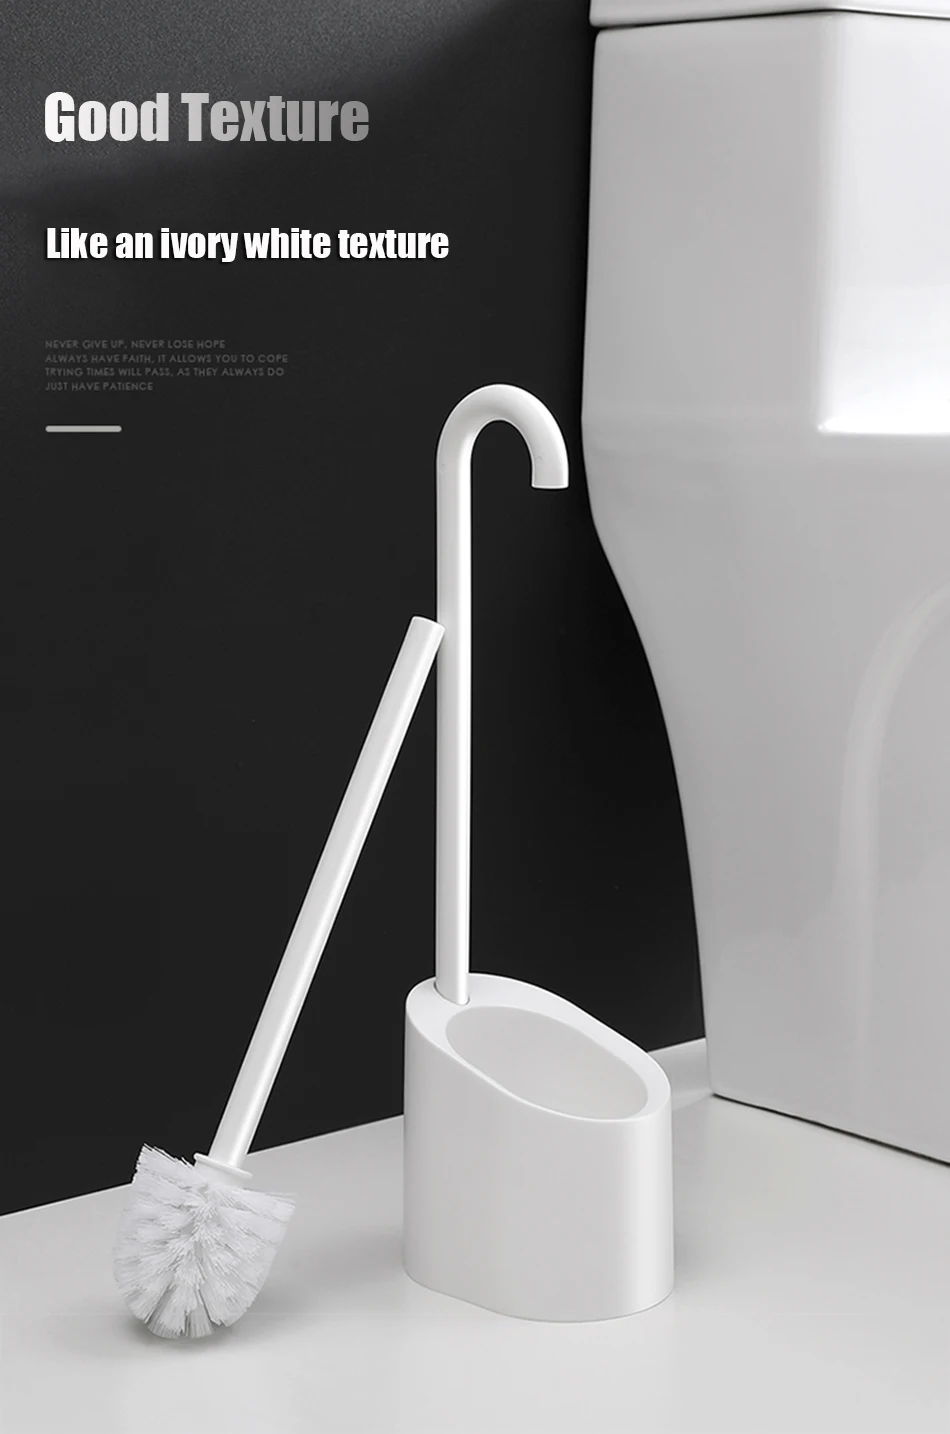 Магнитная щетка для чистки ванной комнаты креативная пластиковая туалетная щетка с длинной ручкой портативные Чистящие Инструменты Набор